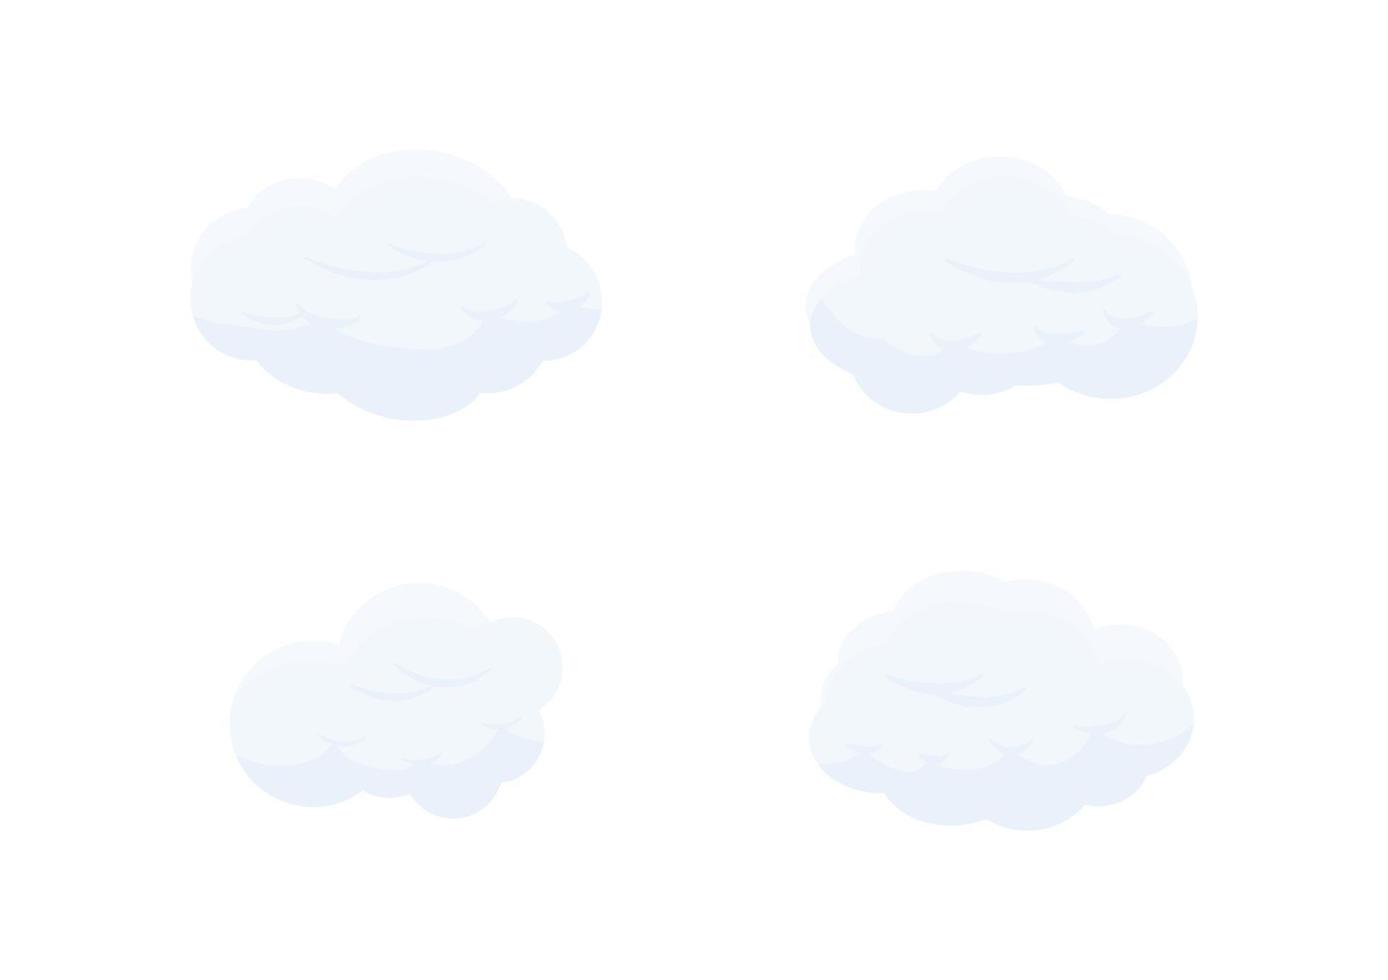 set di vettori di nuvole di cartoni animati isolati su sfondo bianco